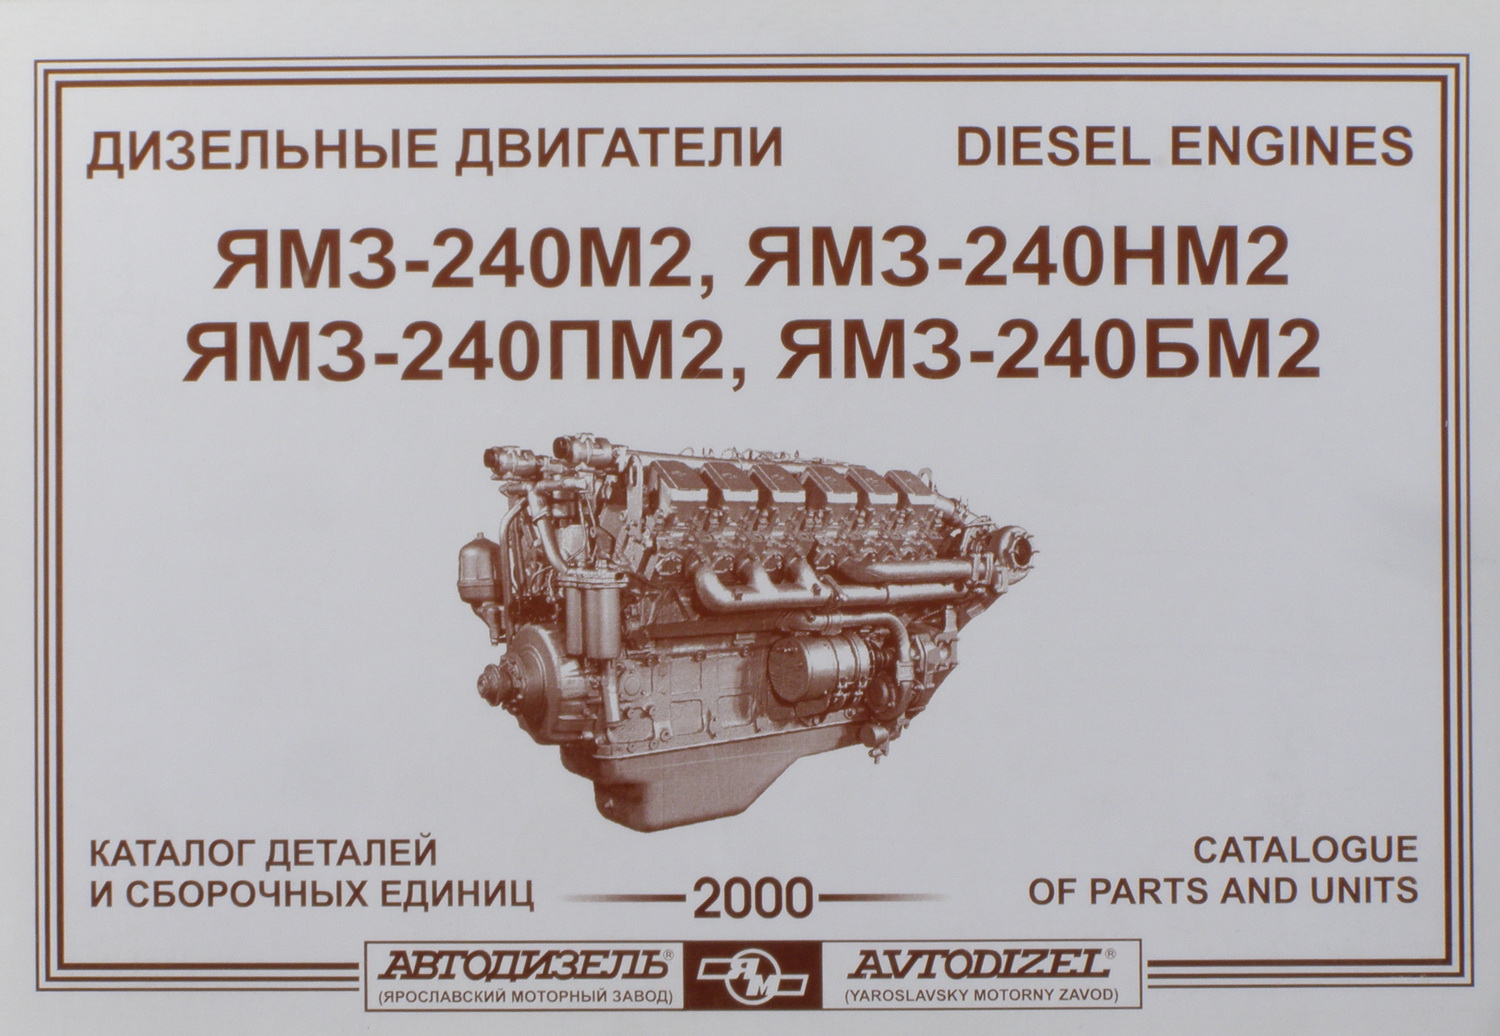 Двигатель ЯМЗ-240 каталог запчастей. Каталог деталей двигателя ЯМЗ-240нм2. Габариты ДВС ЯМЗ 240. Детали двигателя ЯМЗ 240. Сборочные единицы двигателя